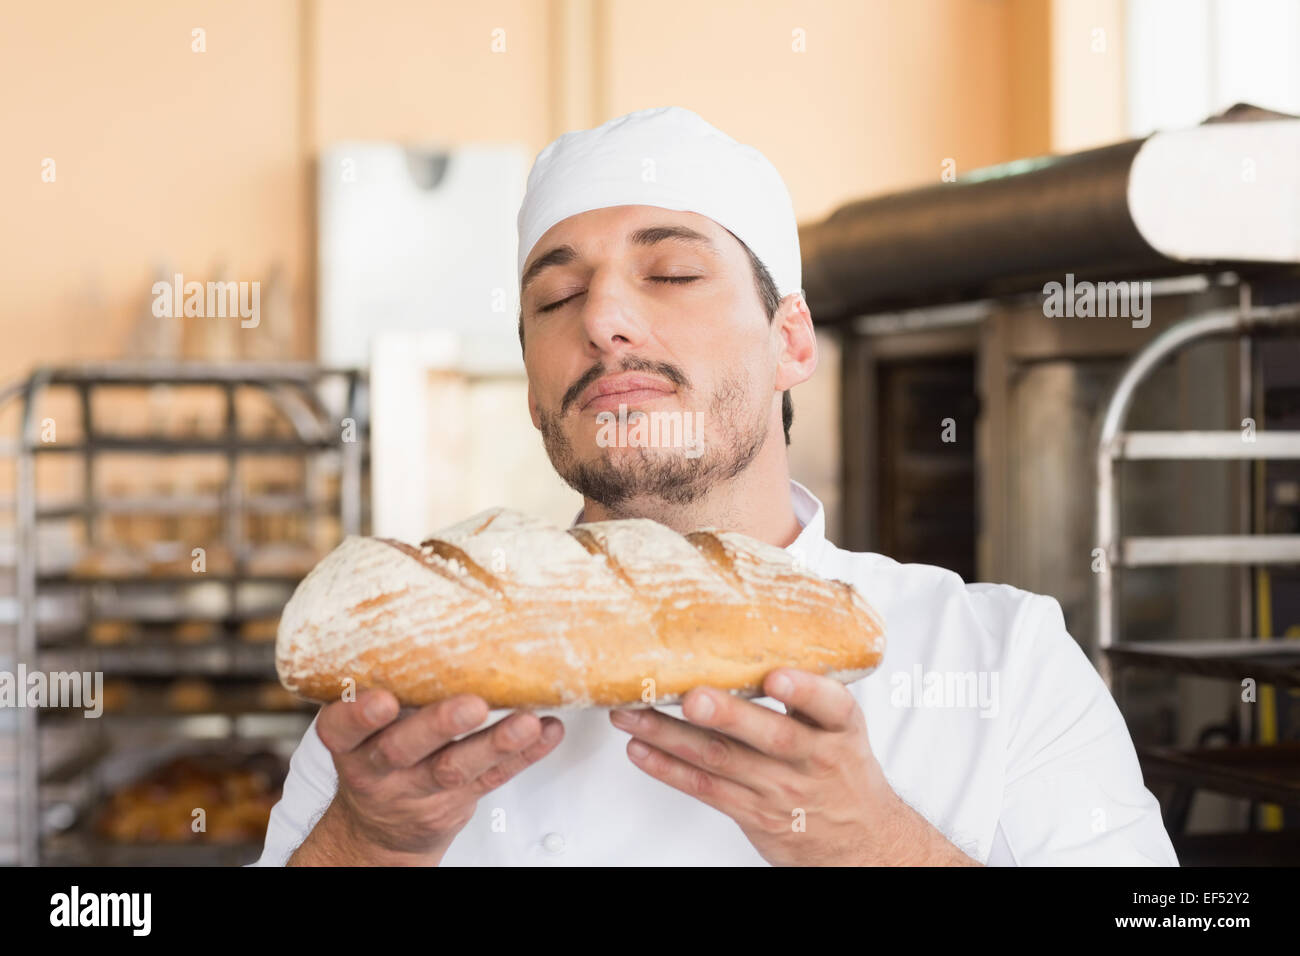 Baker smelling freshly baked loaf Stock Photo